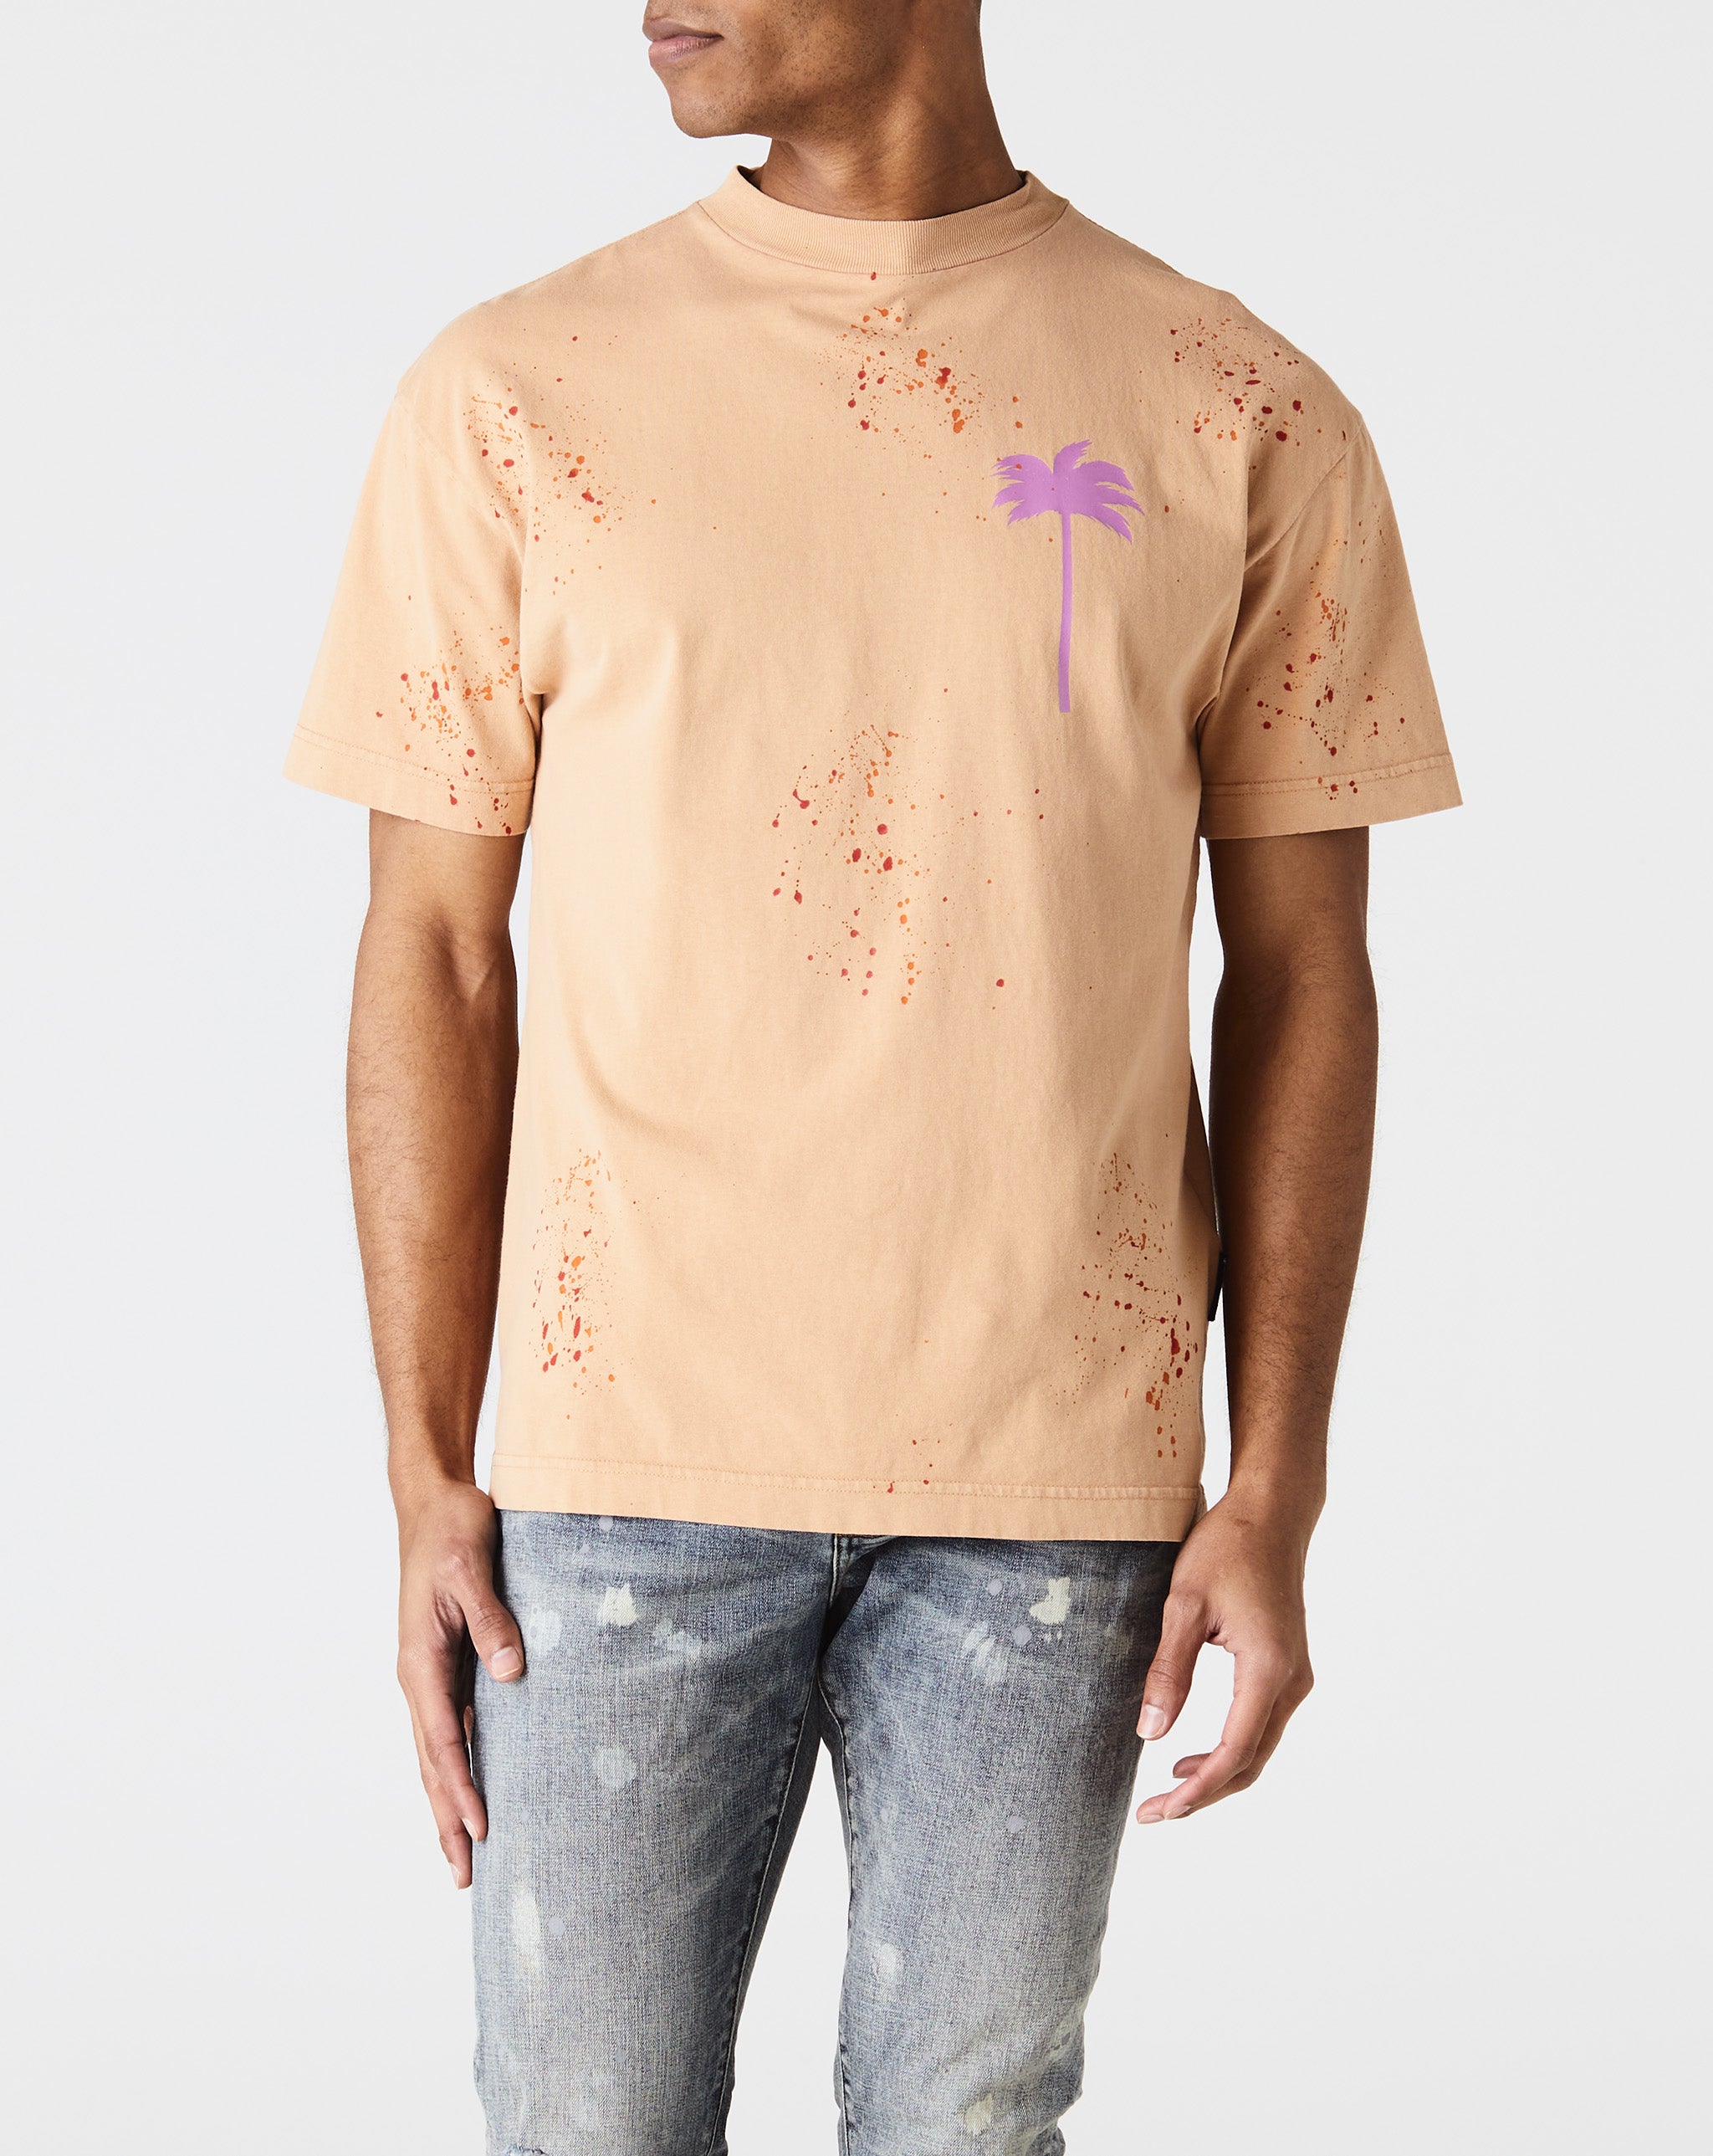 PxP Painted Classic T-Shirt – Xhibition